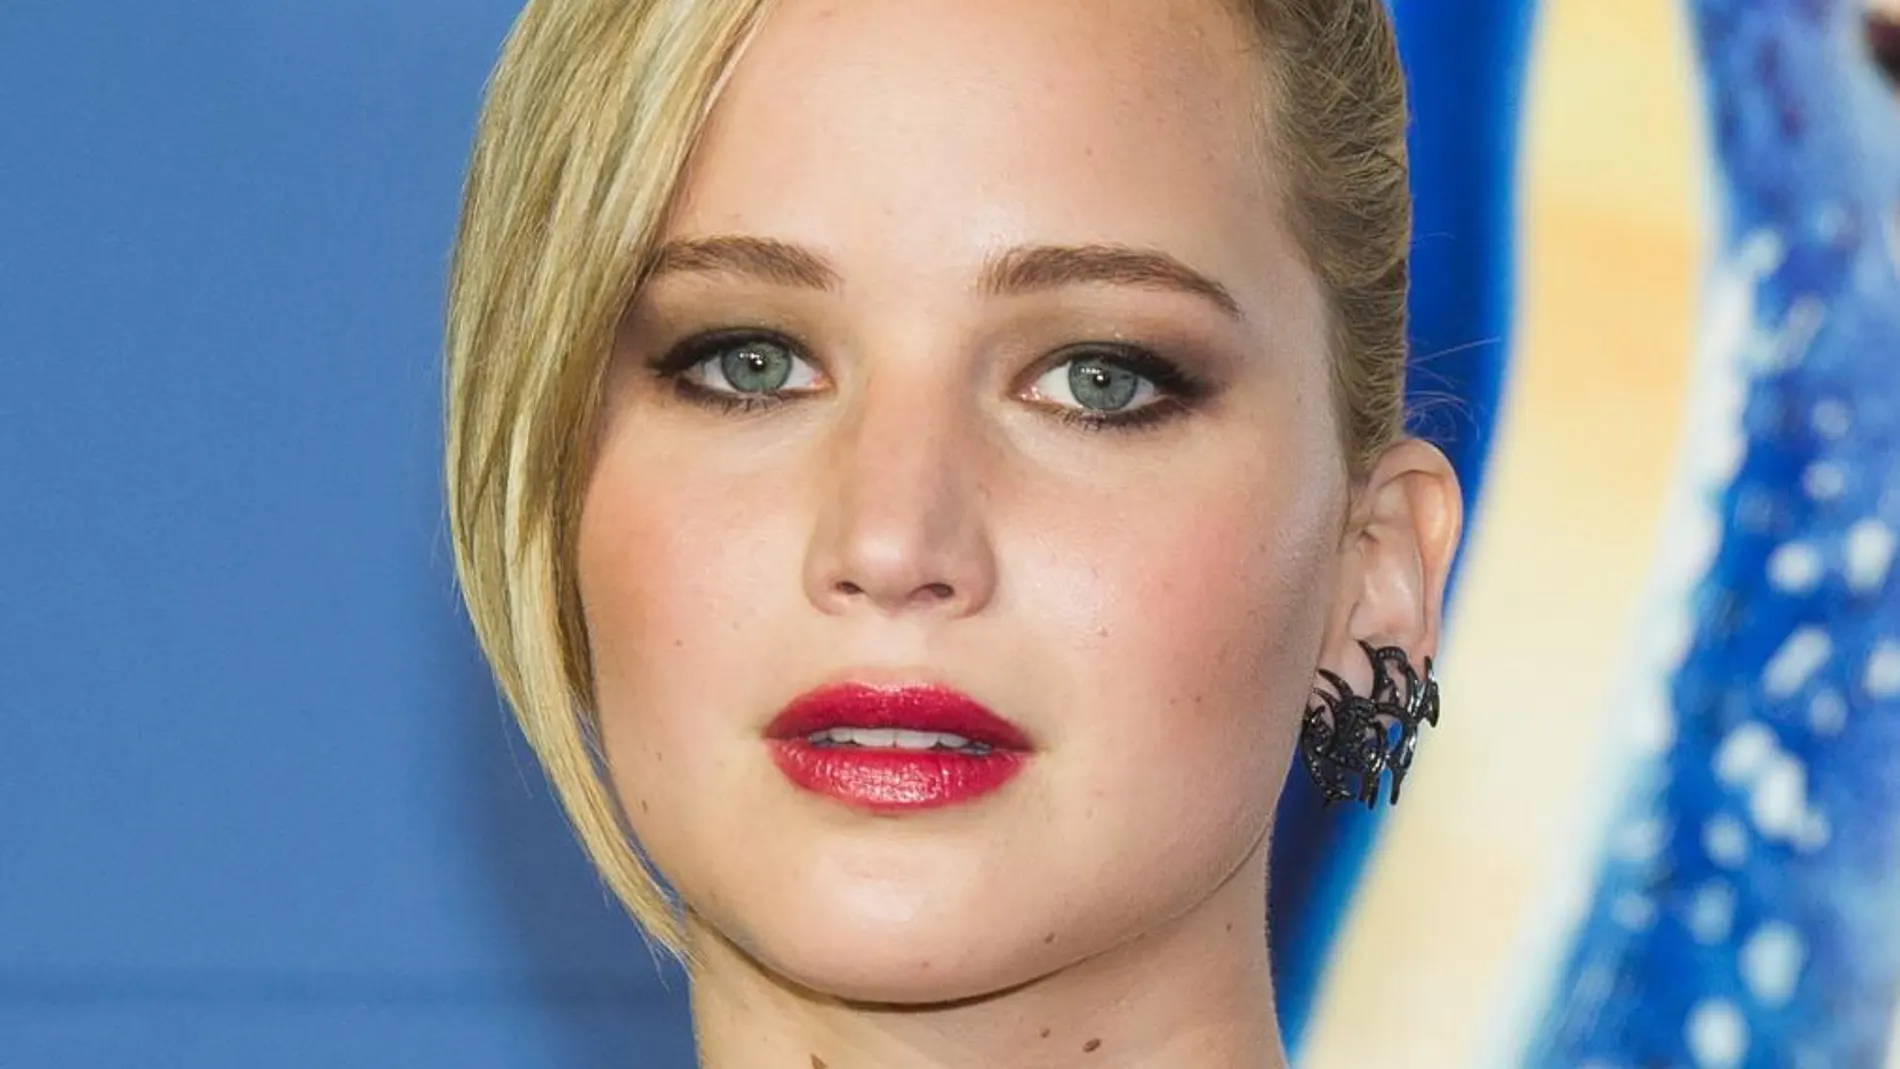 Filtran en Internet fotos íntimas de Jennifer Lawrence y otras actrices